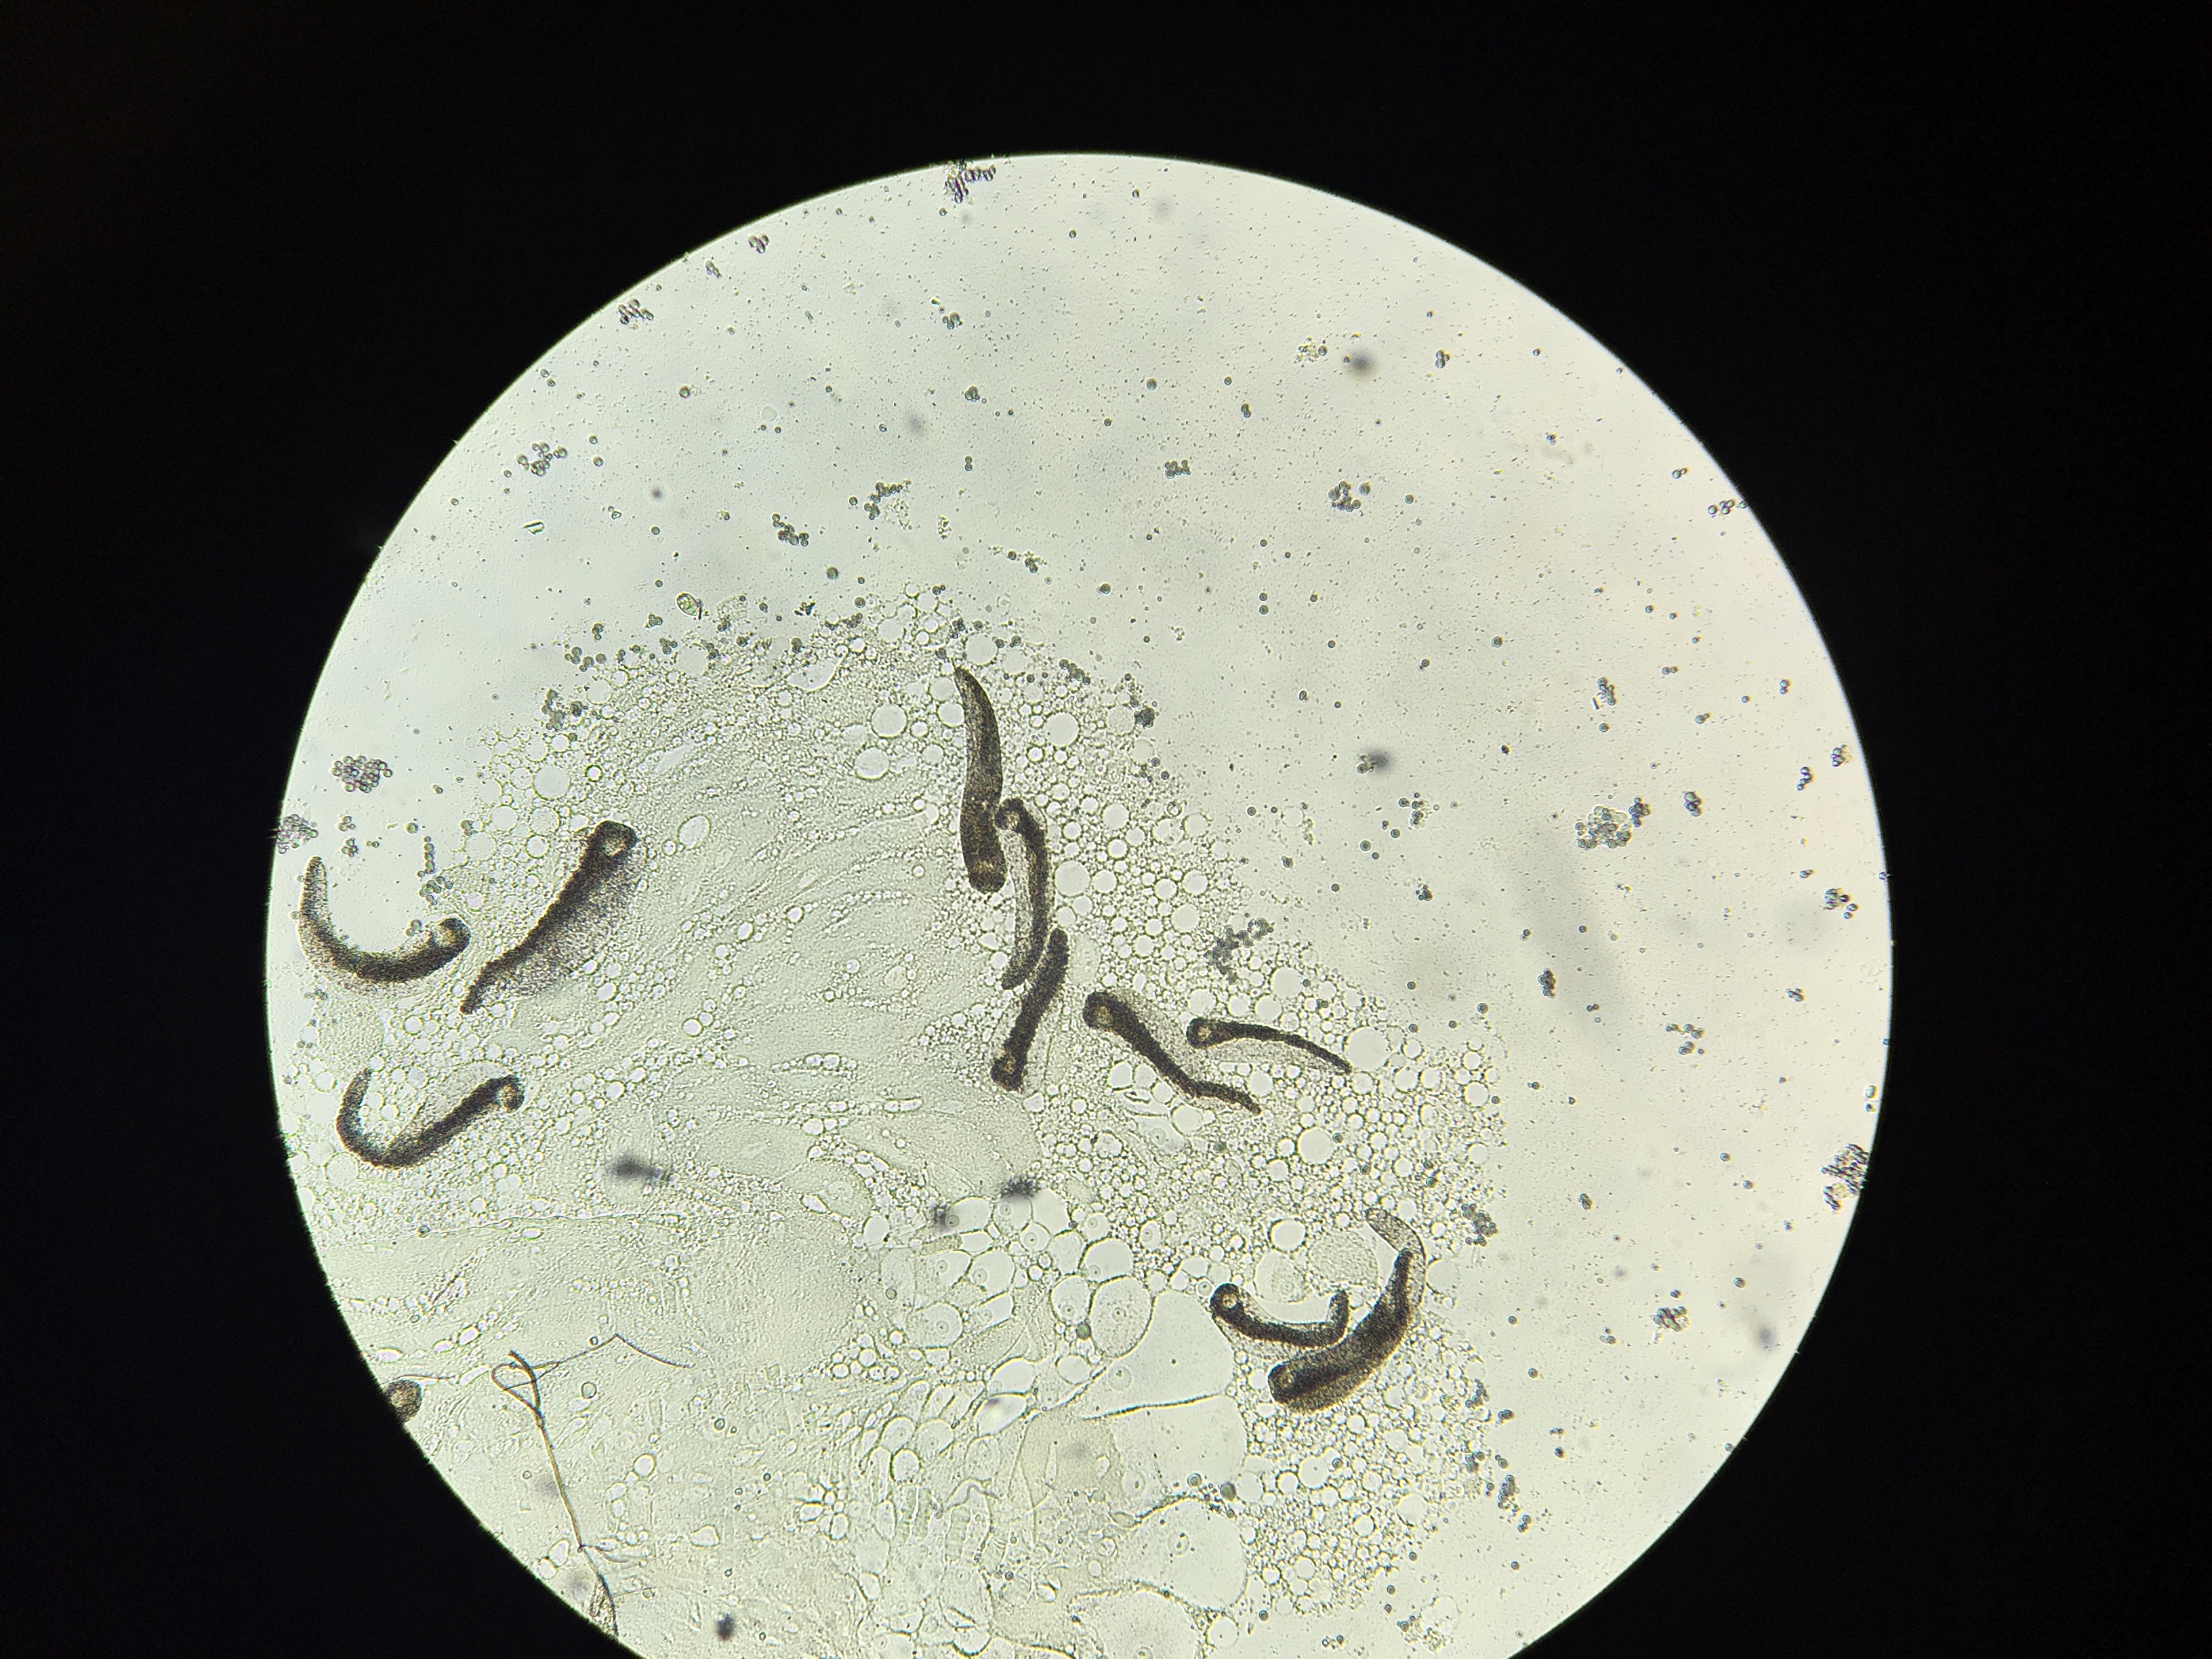 A microscopic image of Ascogregarina barretti trophozoites in the midgut tissue of a native North American Aedes triseriatus mosquito. Credit, E. Biro.